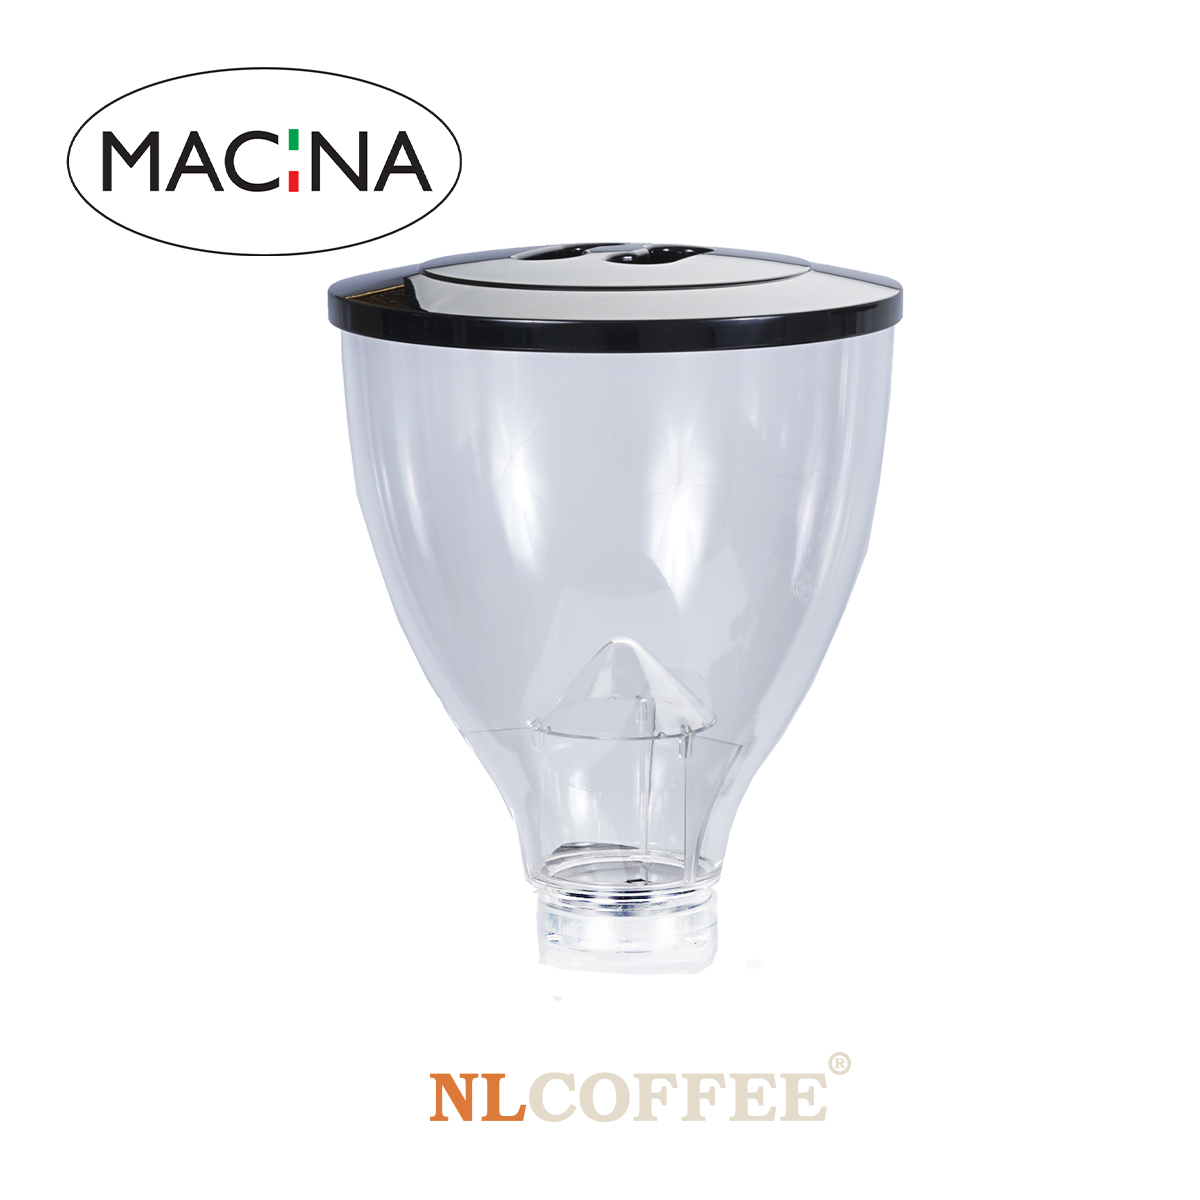 โถเมล็ดกาแฟ Macina ขนาด 1200 กรัม